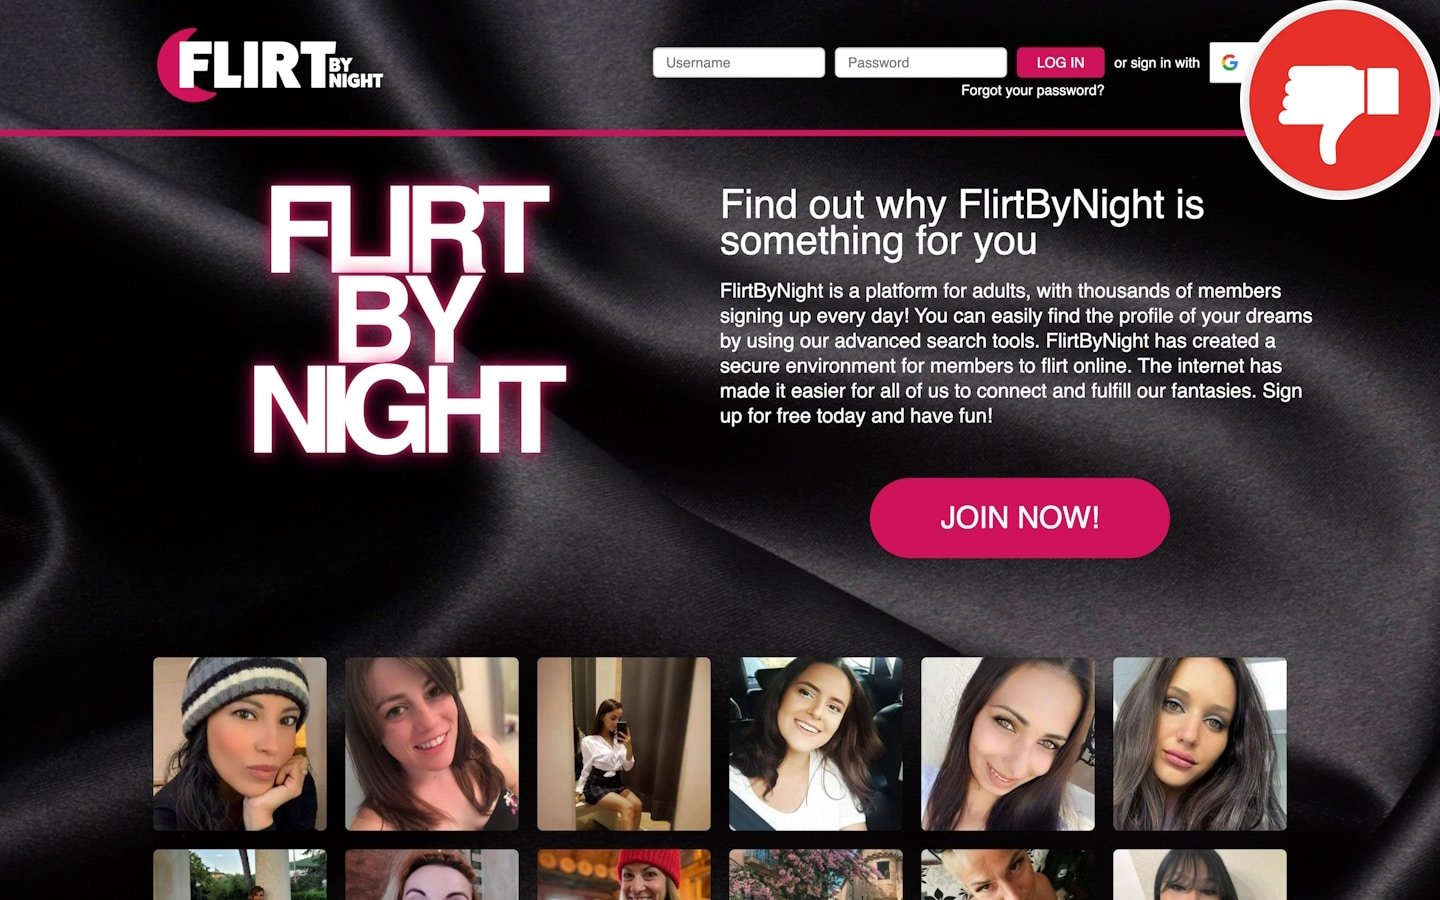 Review FlirtByNight.com scam experience